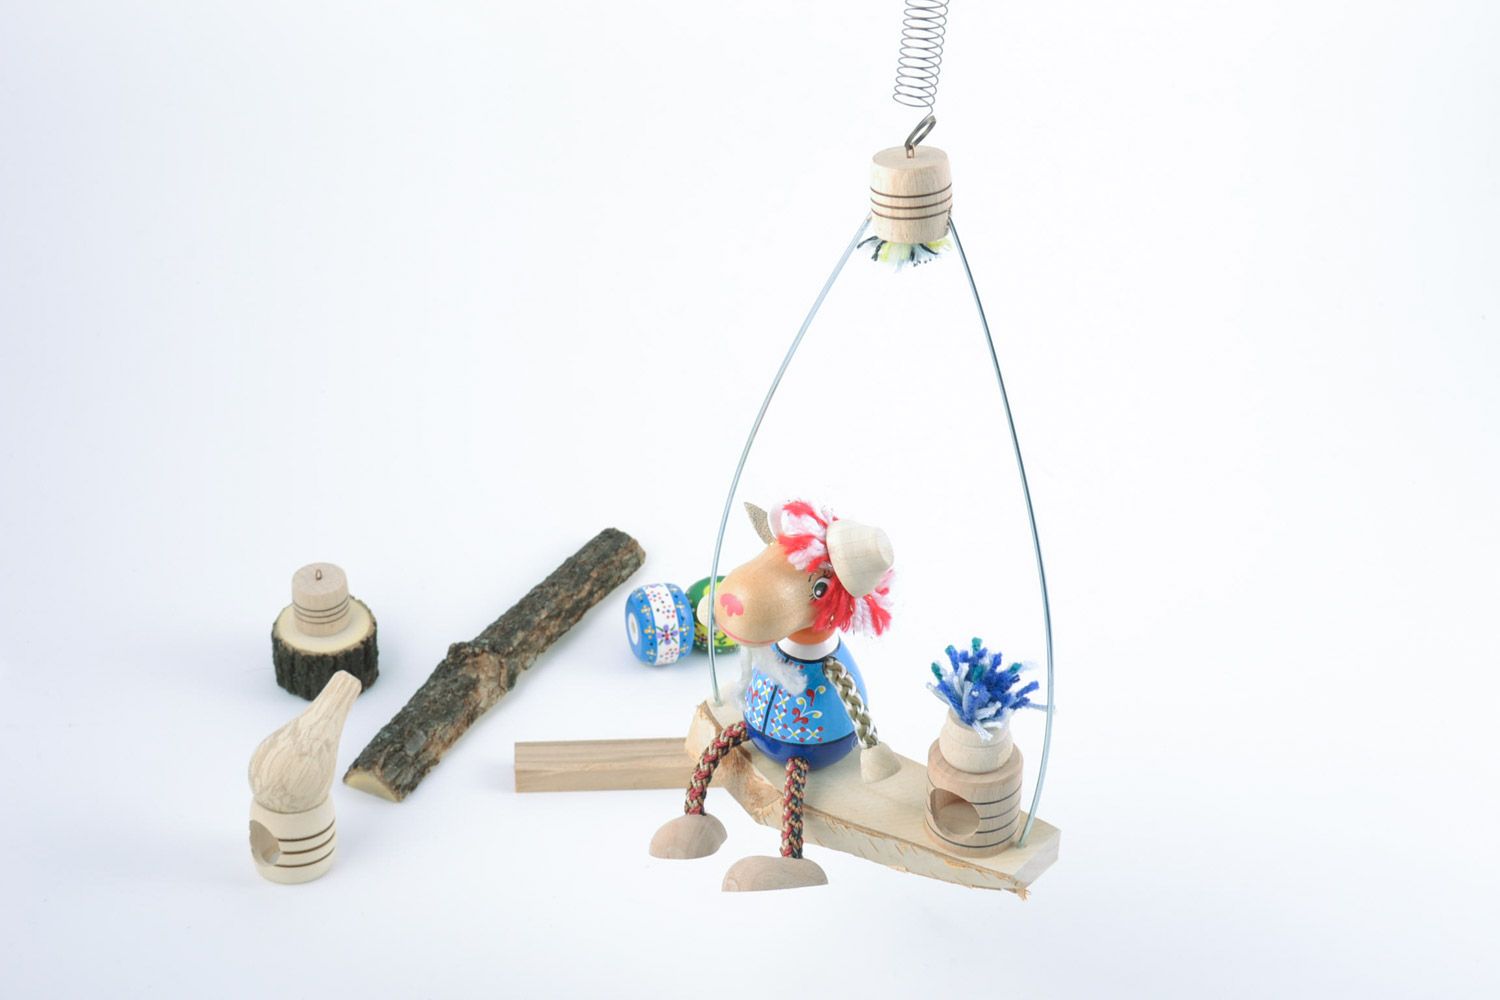 Оригинальная деревянная игрушка Козлик на лавочке ручной работы расписная фото 1